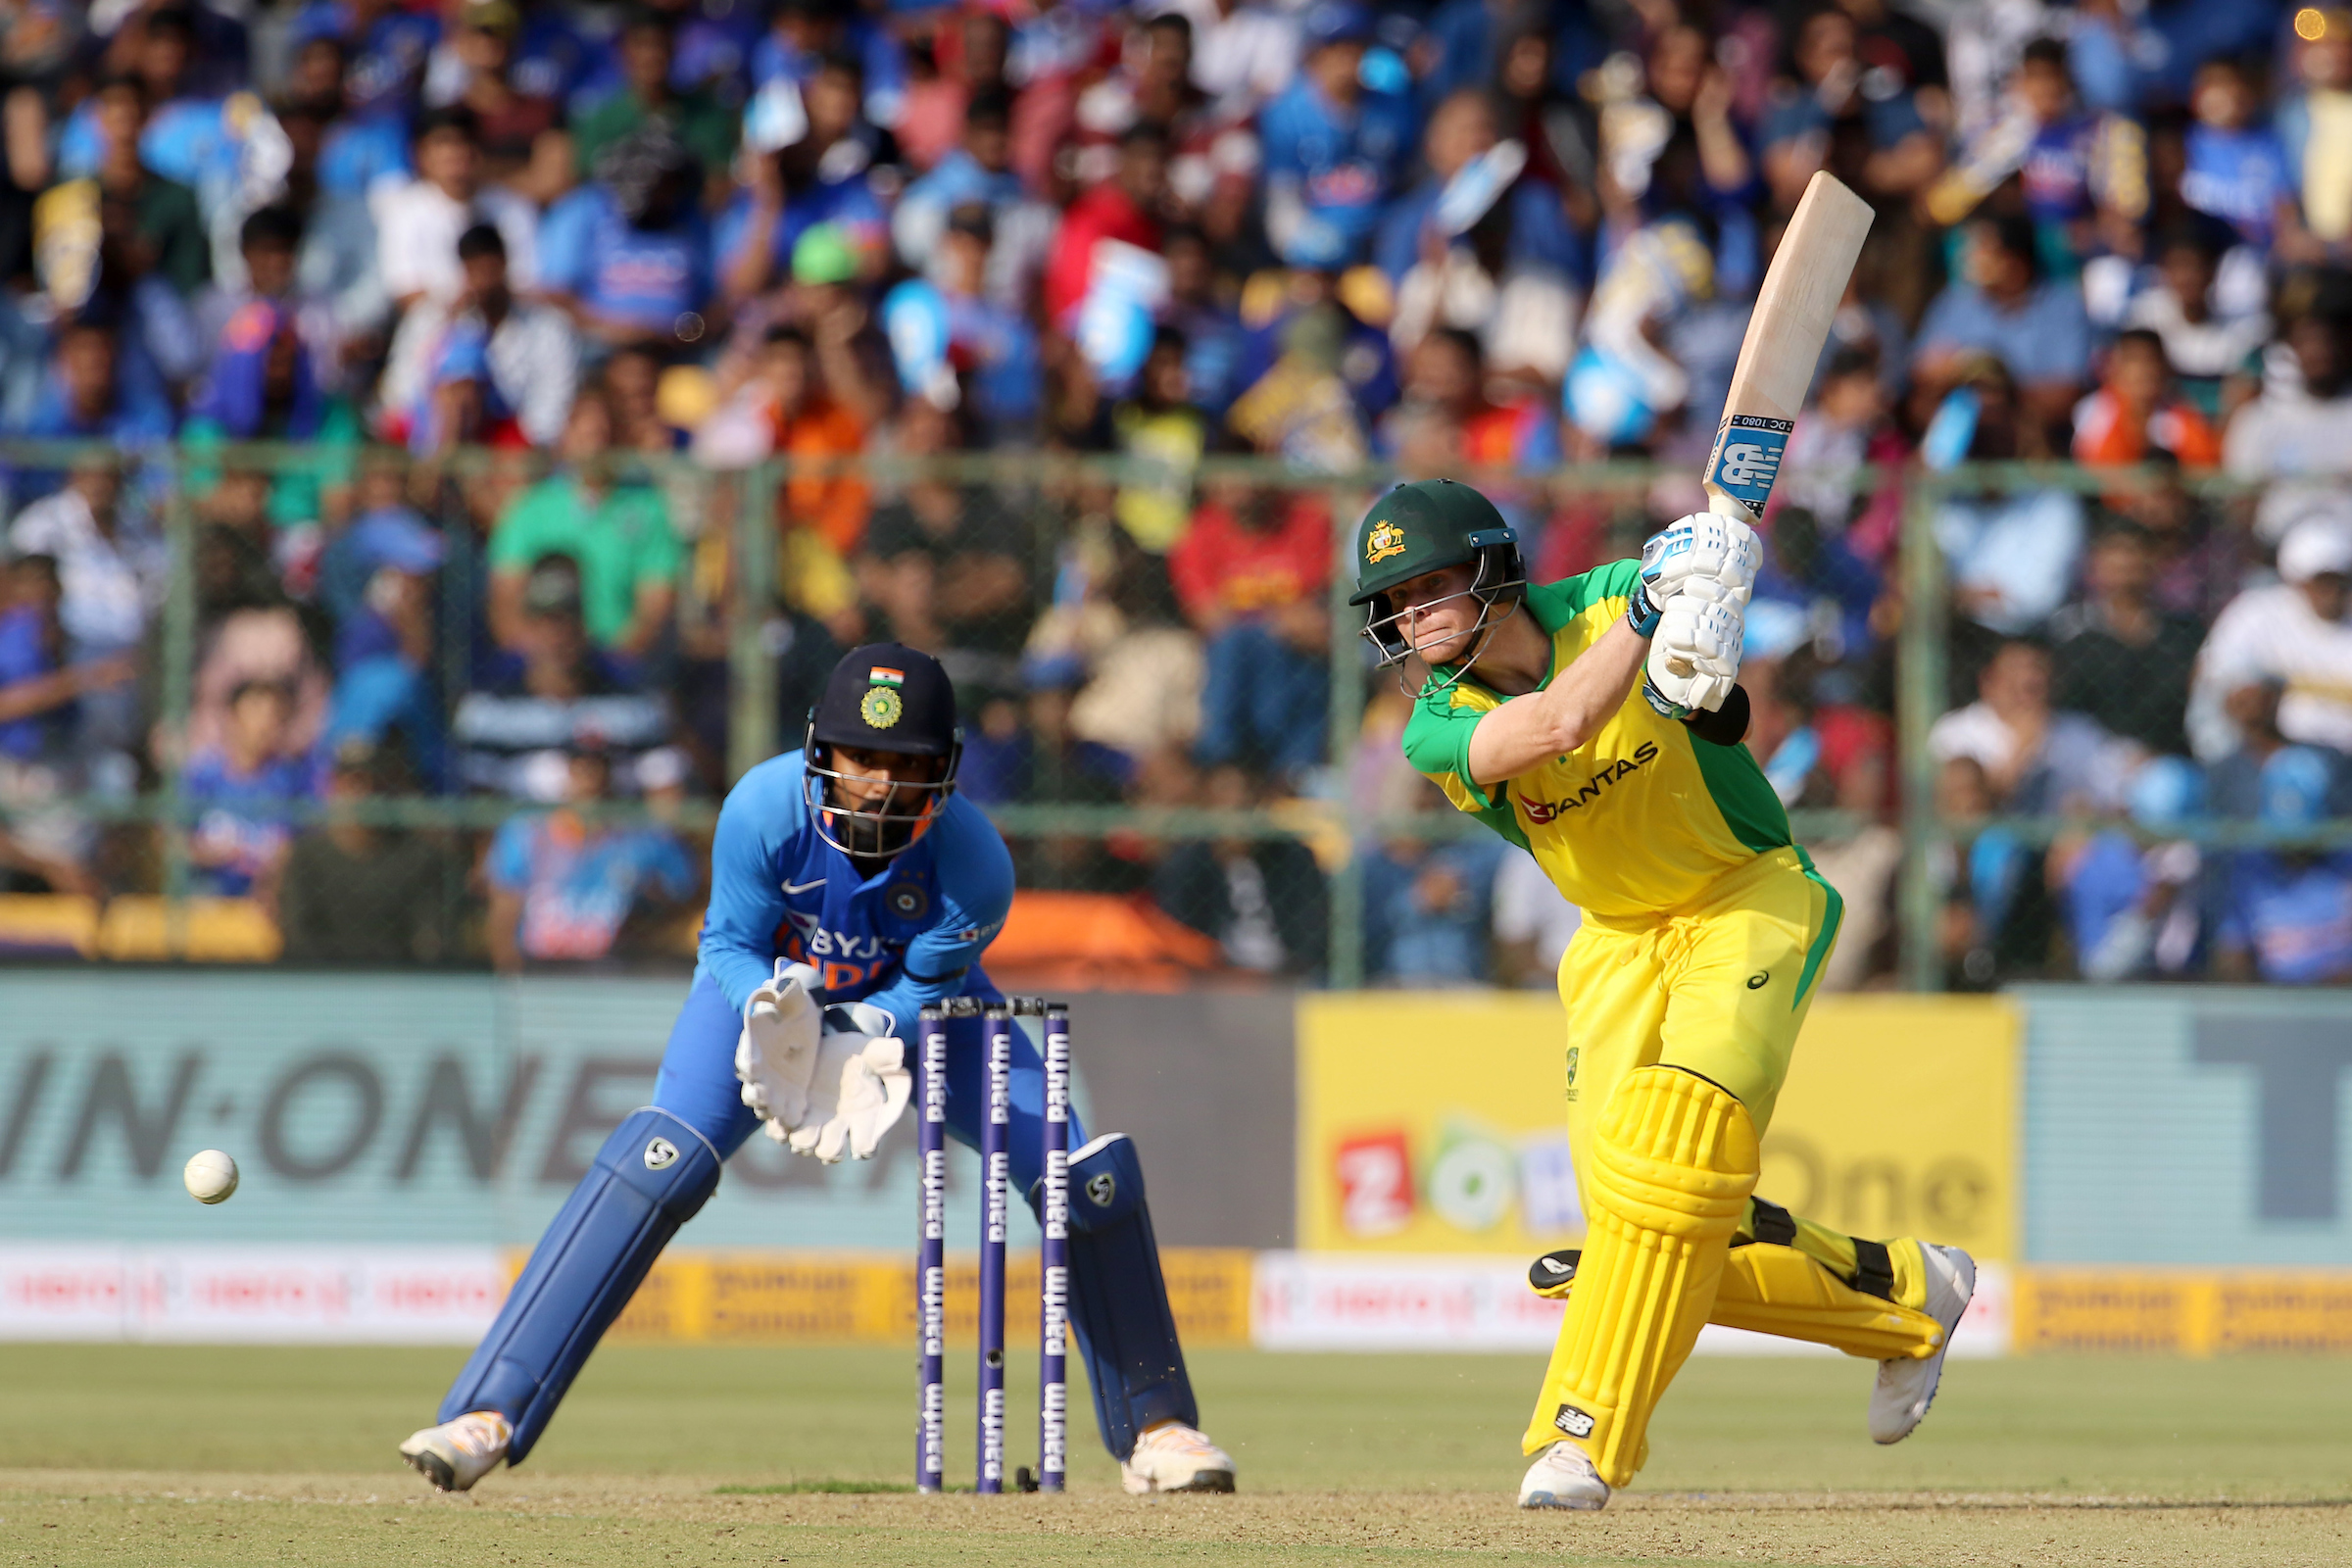 India vs Australia ODI Series